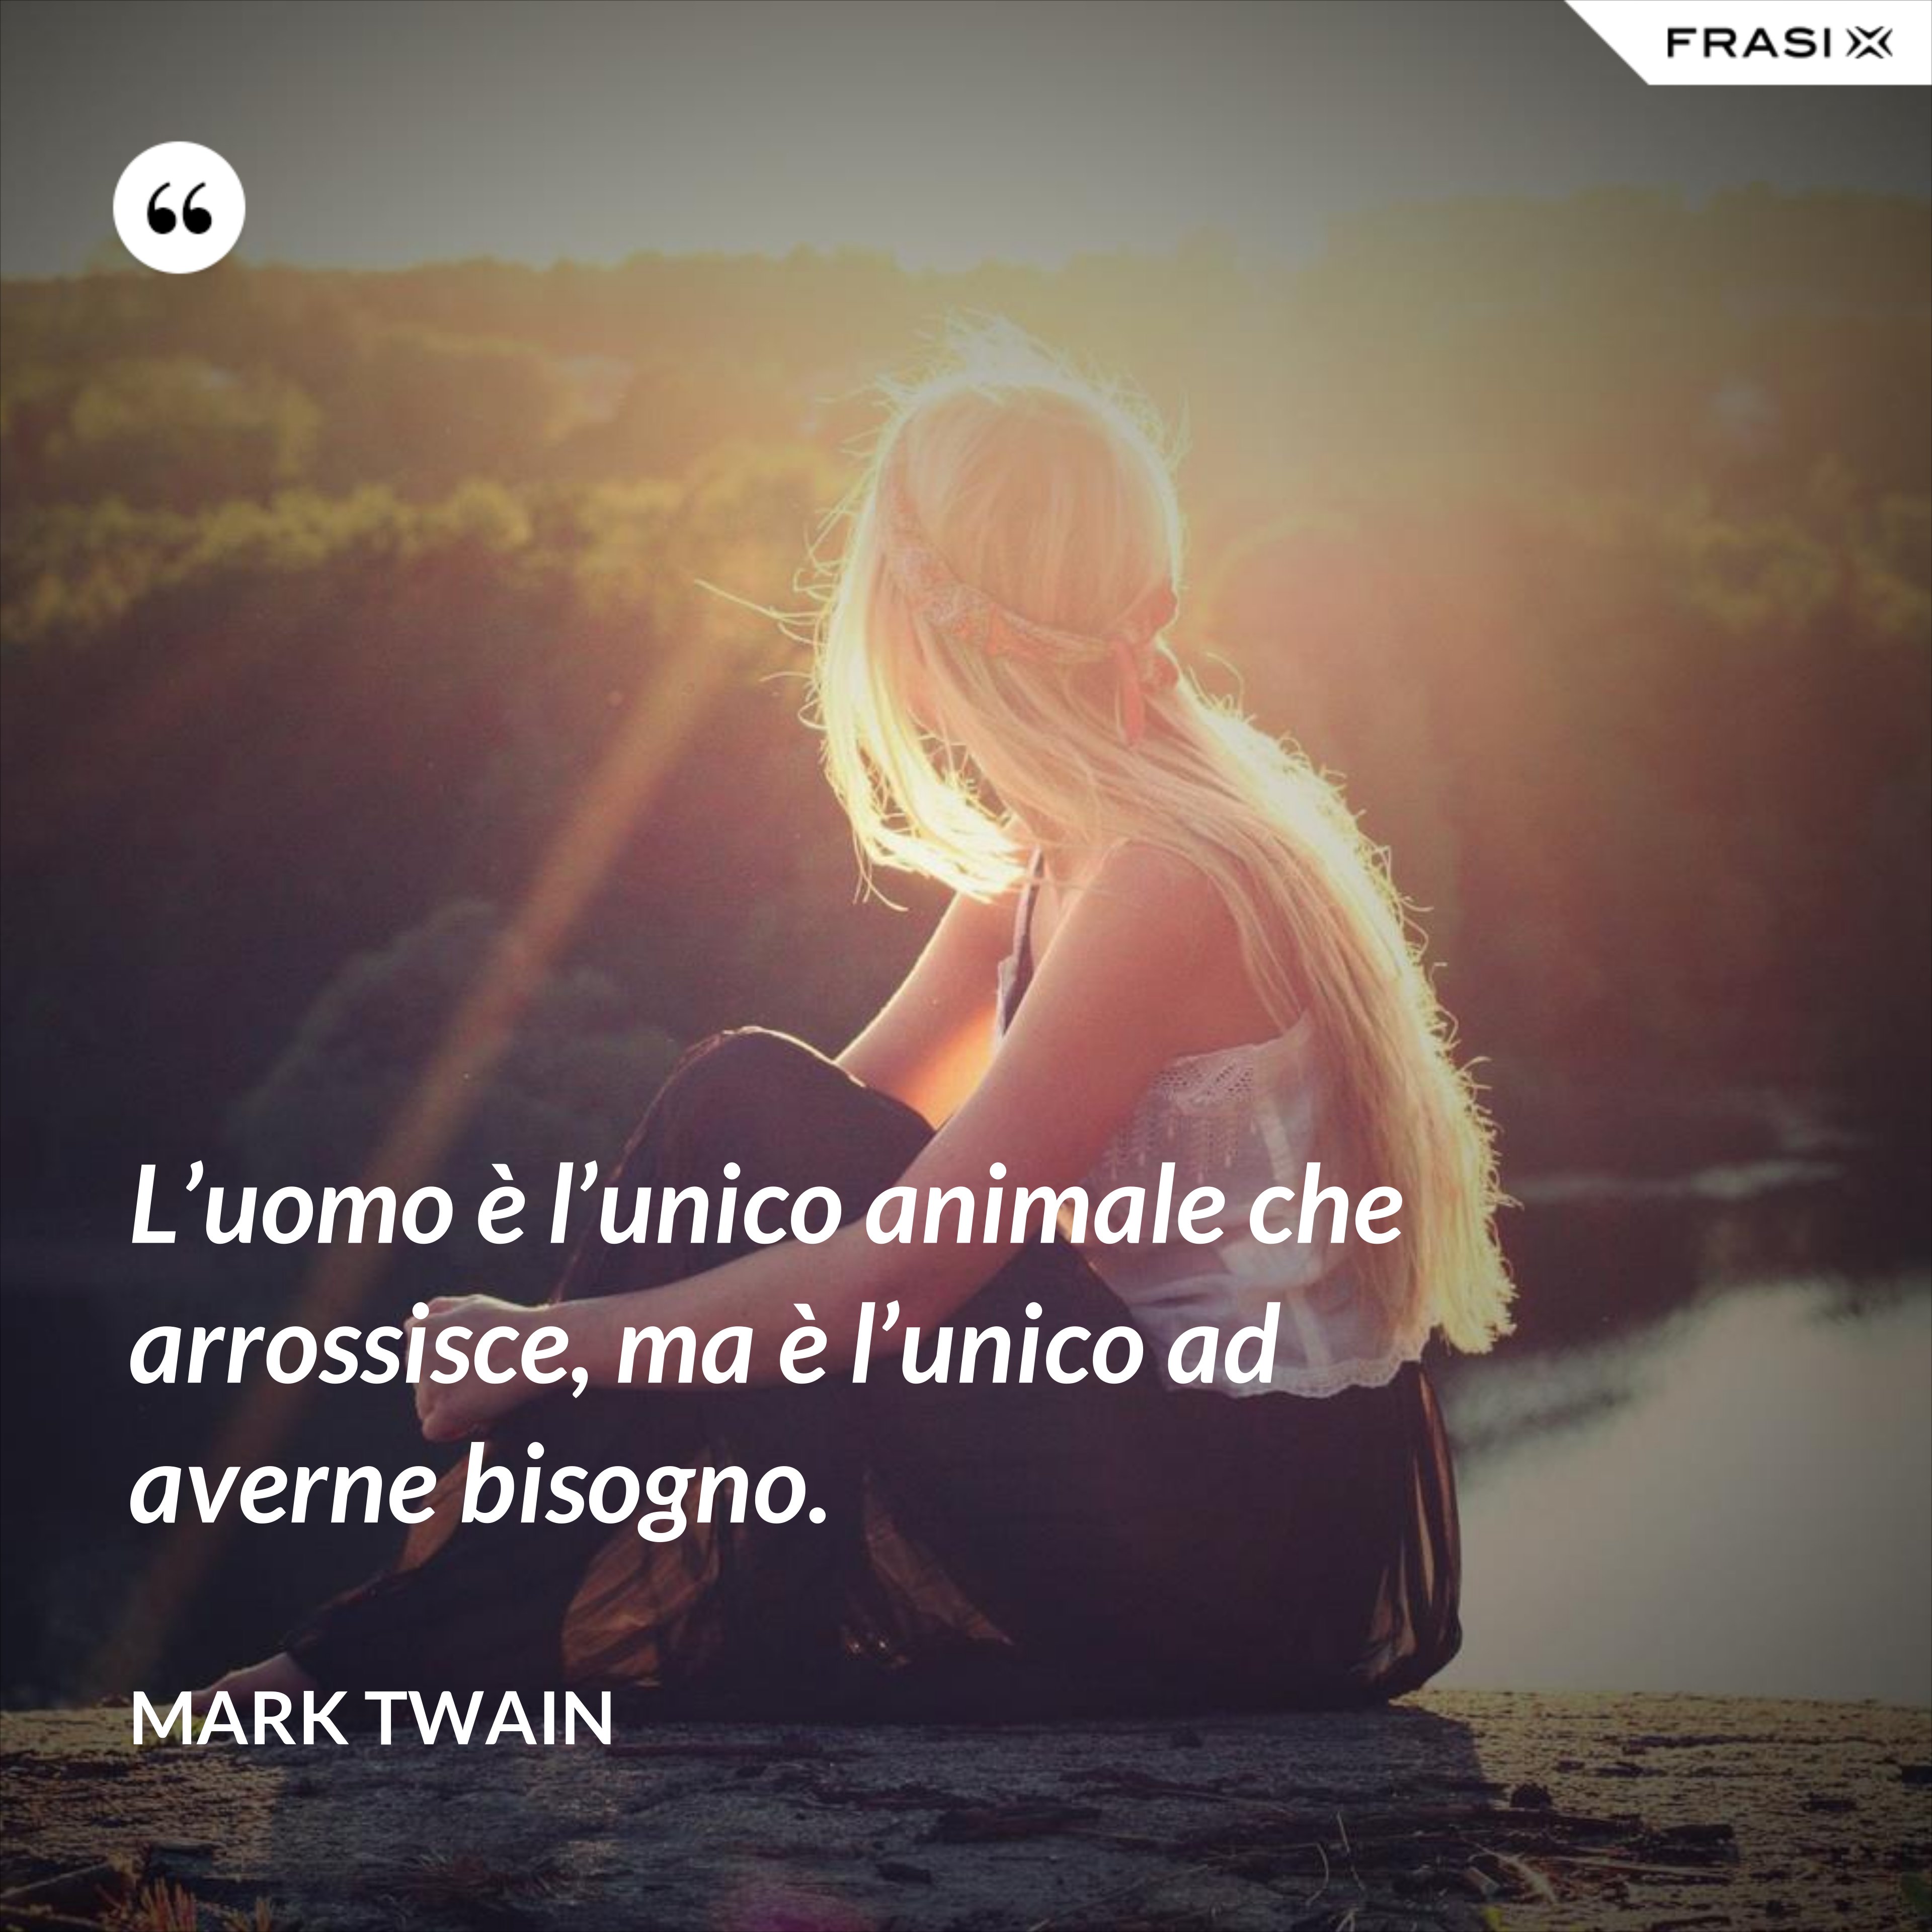 L’uomo è l’unico animale che arrossisce, ma è l’unico ad averne bisogno. - Mark Twain